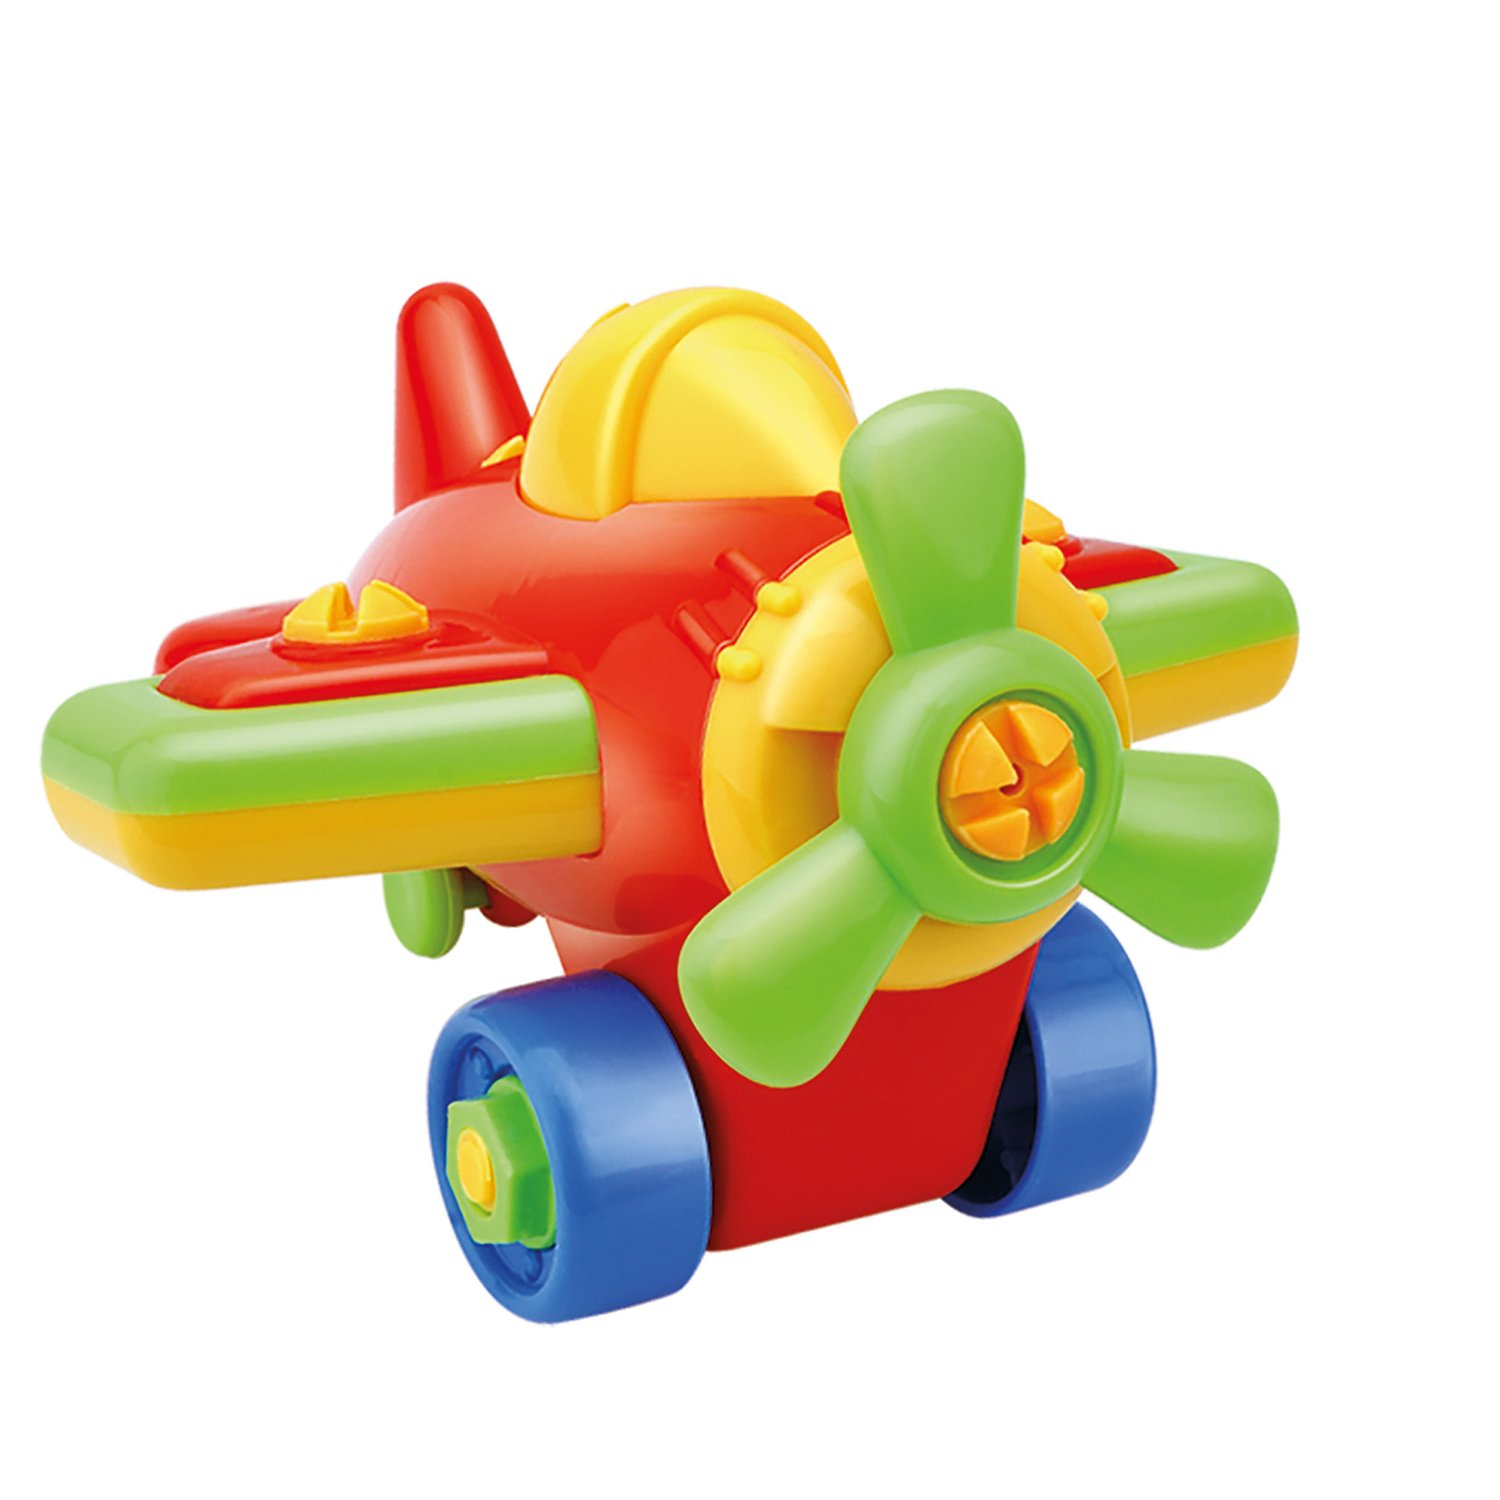 Игрушка-конструктор ToysLab (Bebelino) Самолет